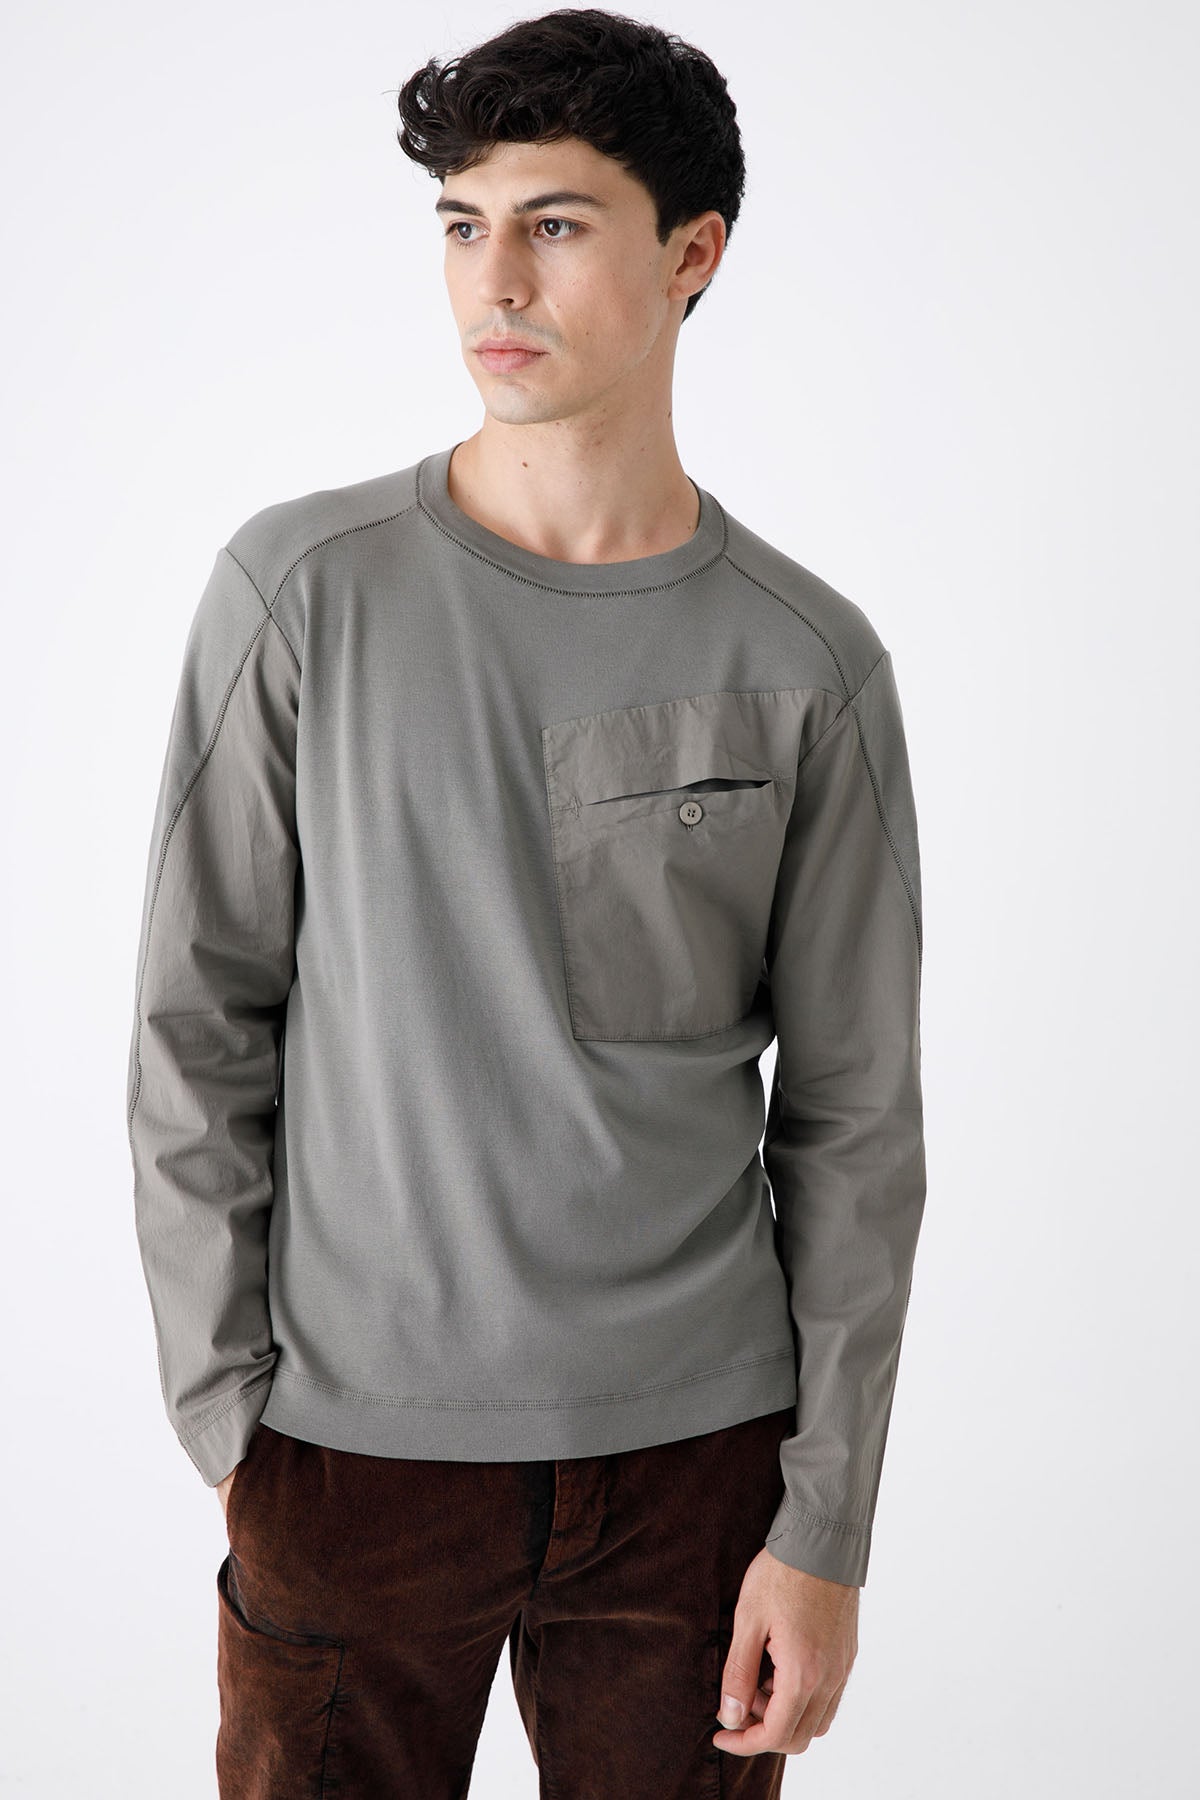 Transit Cep Detaylı Uzun Kollu Streç T-shirt-Libas Trendy Fashion Store